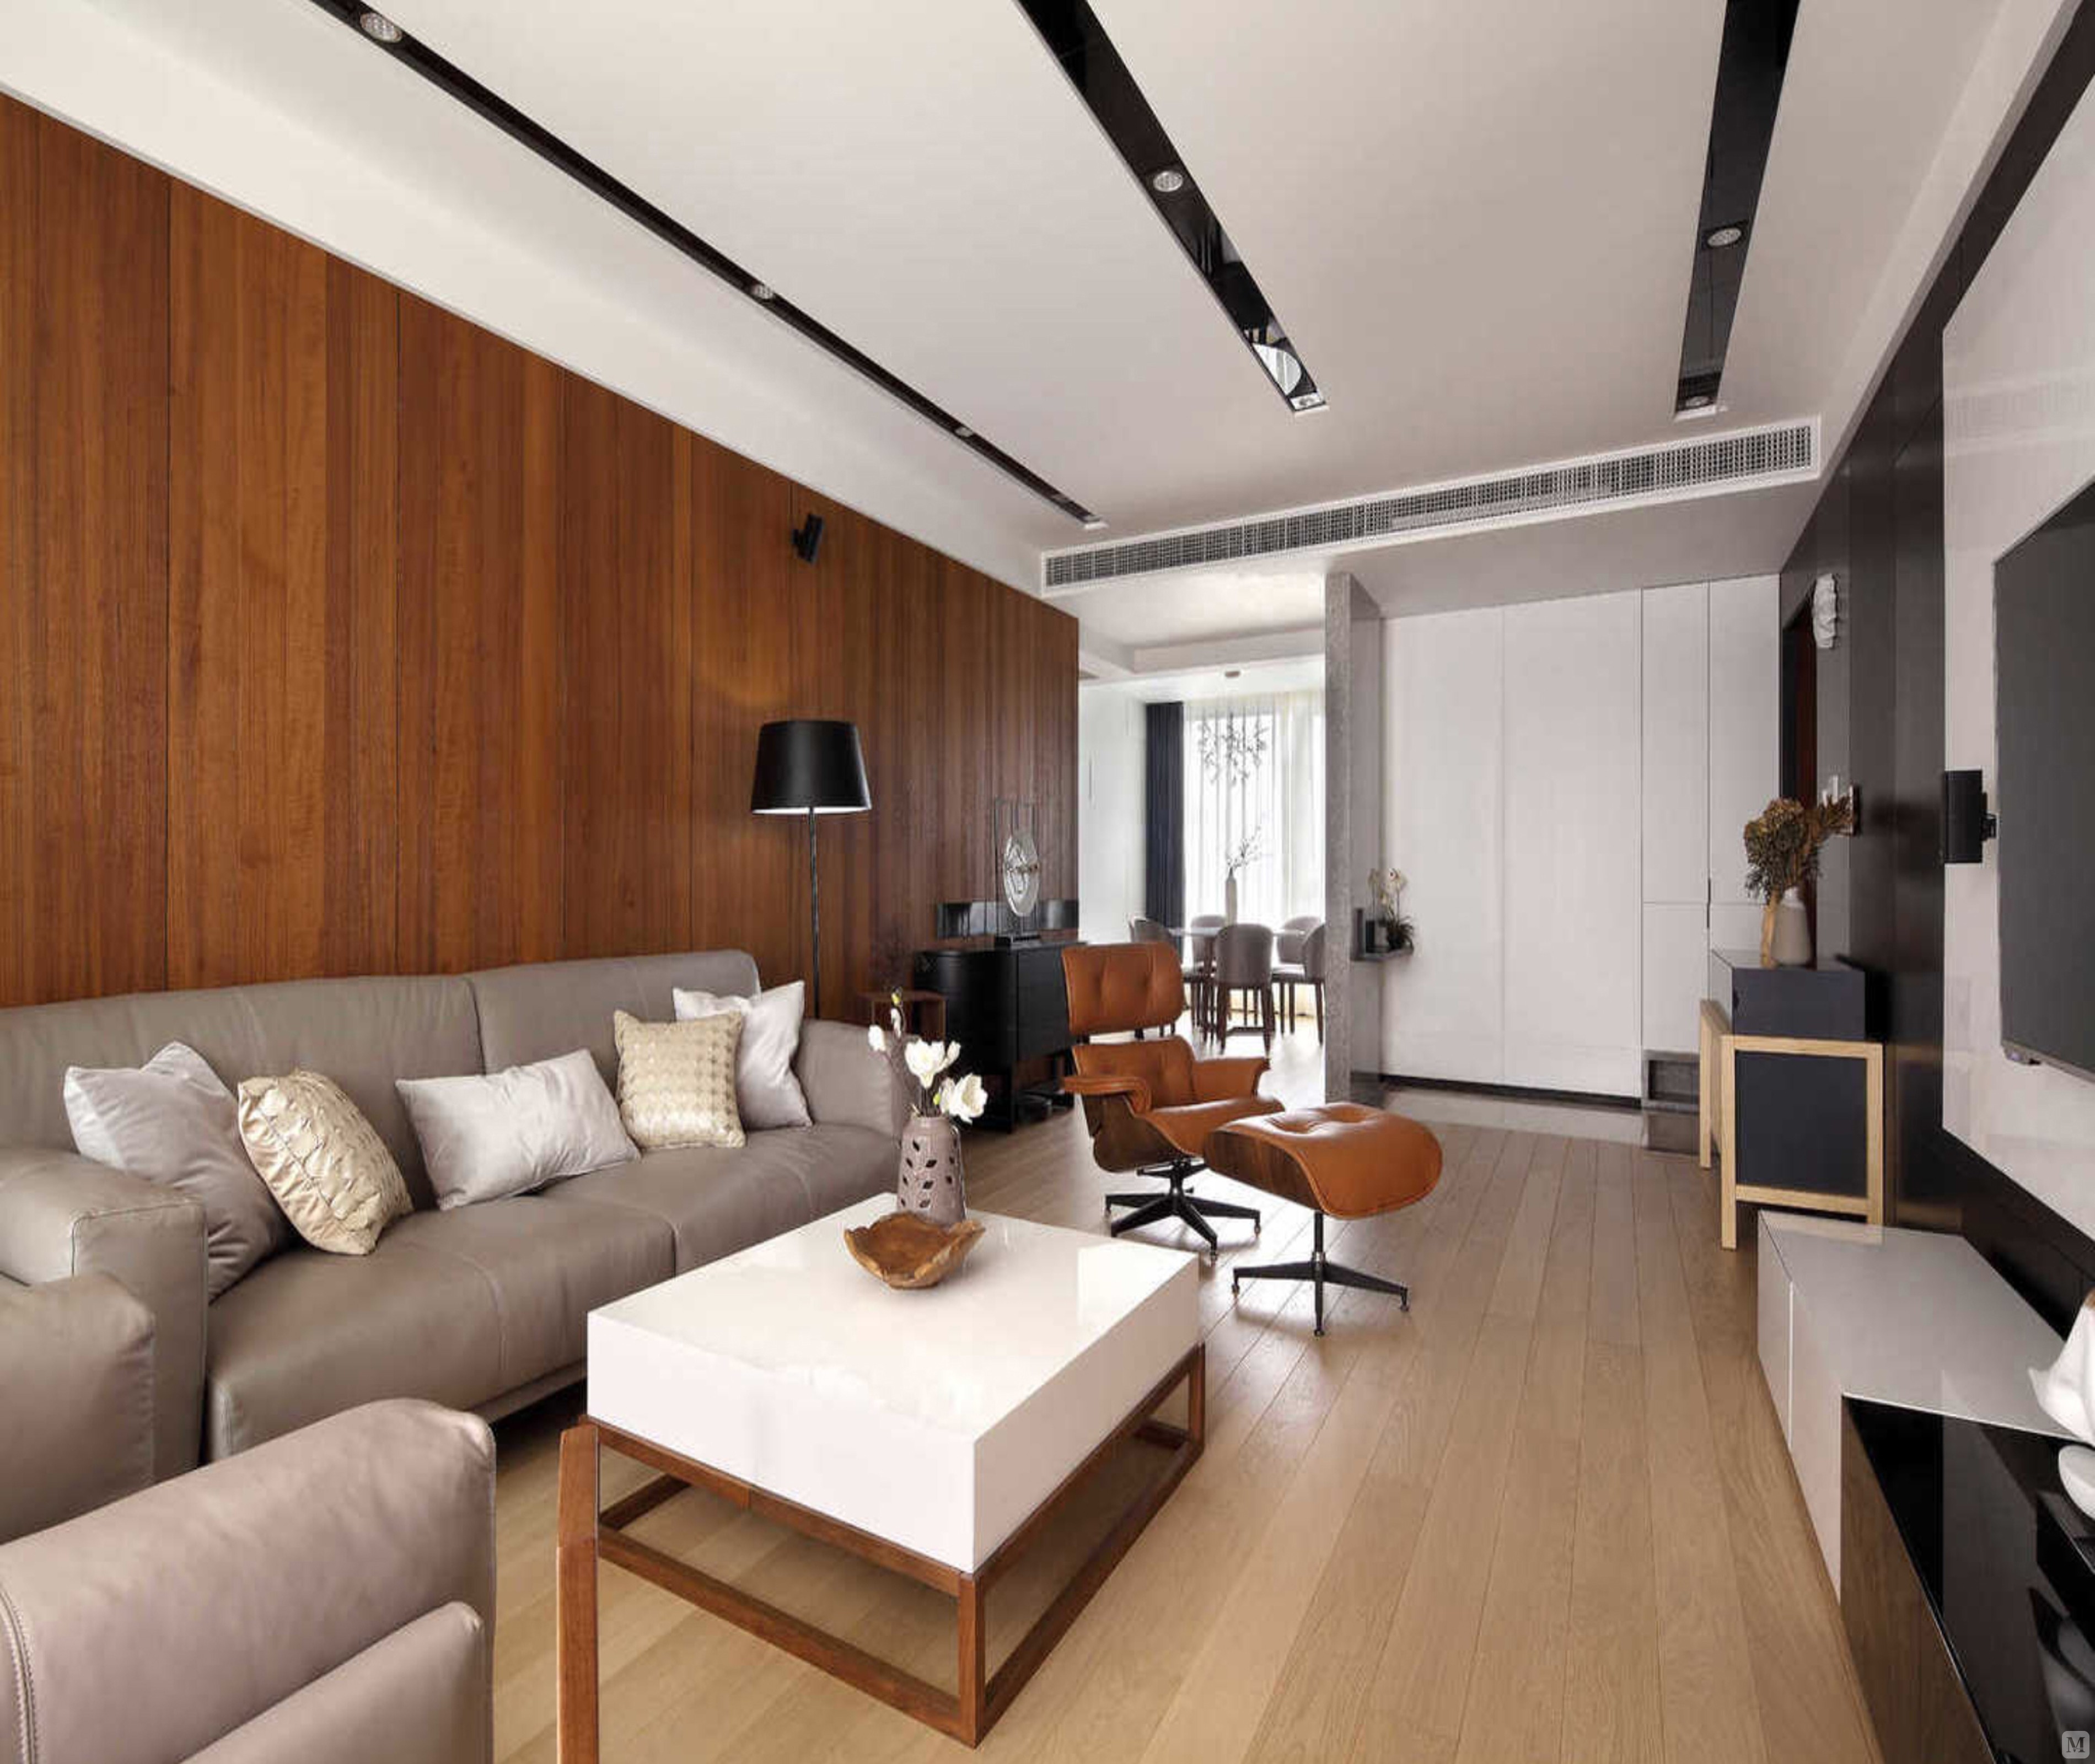 本案使用大面积木质材料,客厅木质沙发背景墙,清新自然,暖色的地板加